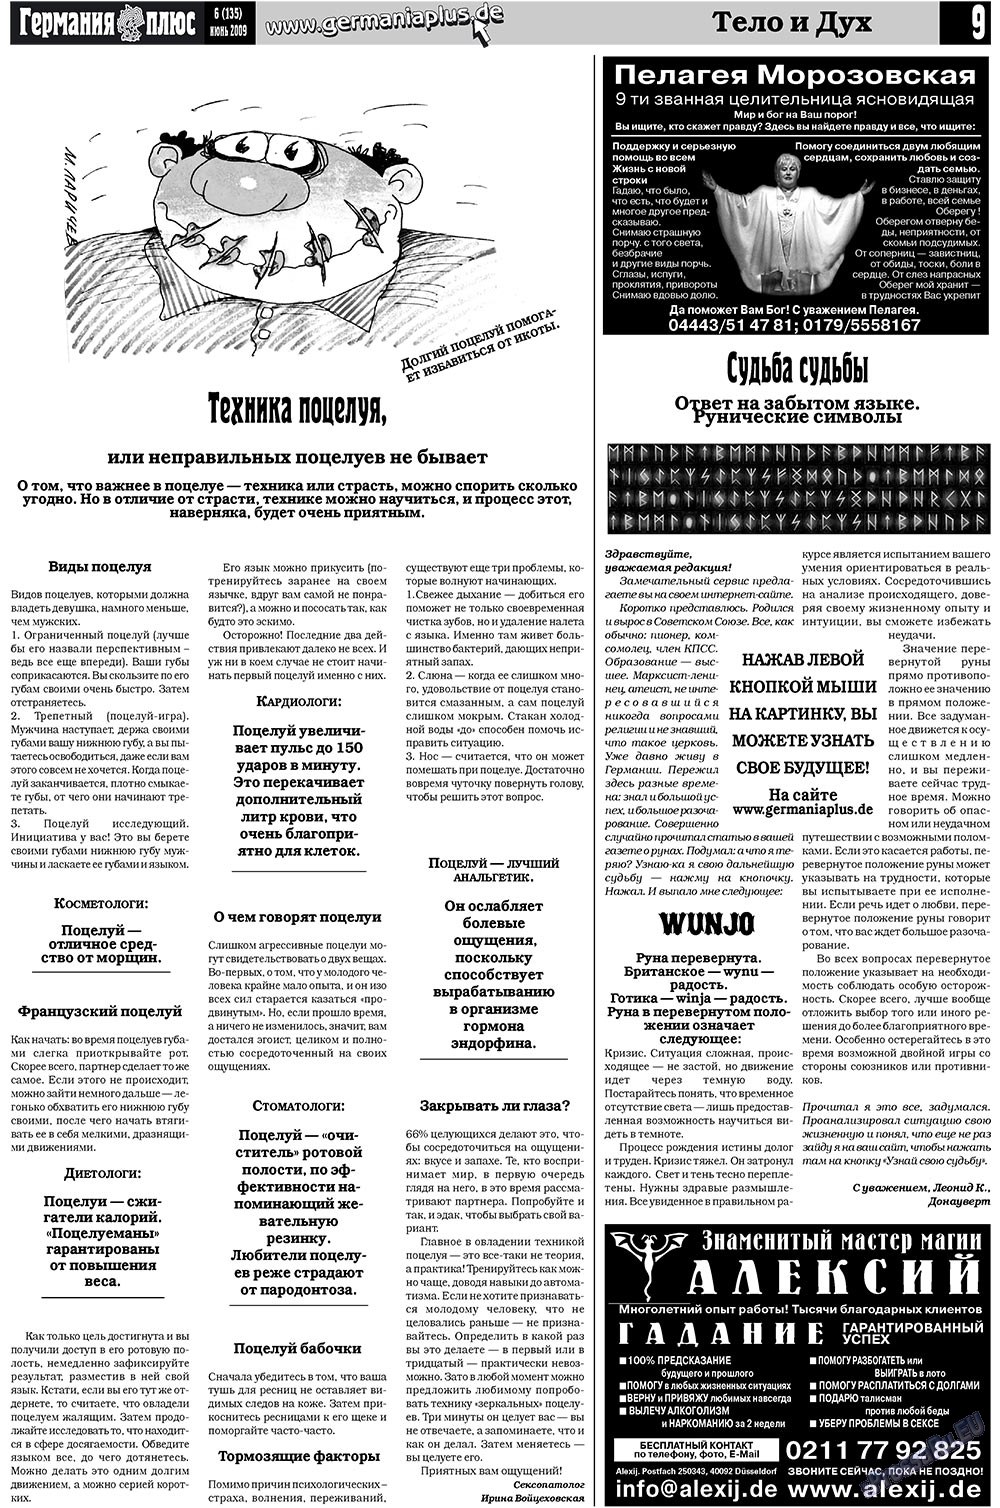 Германия плюс (газета). 2009 год, номер 6, стр. 13